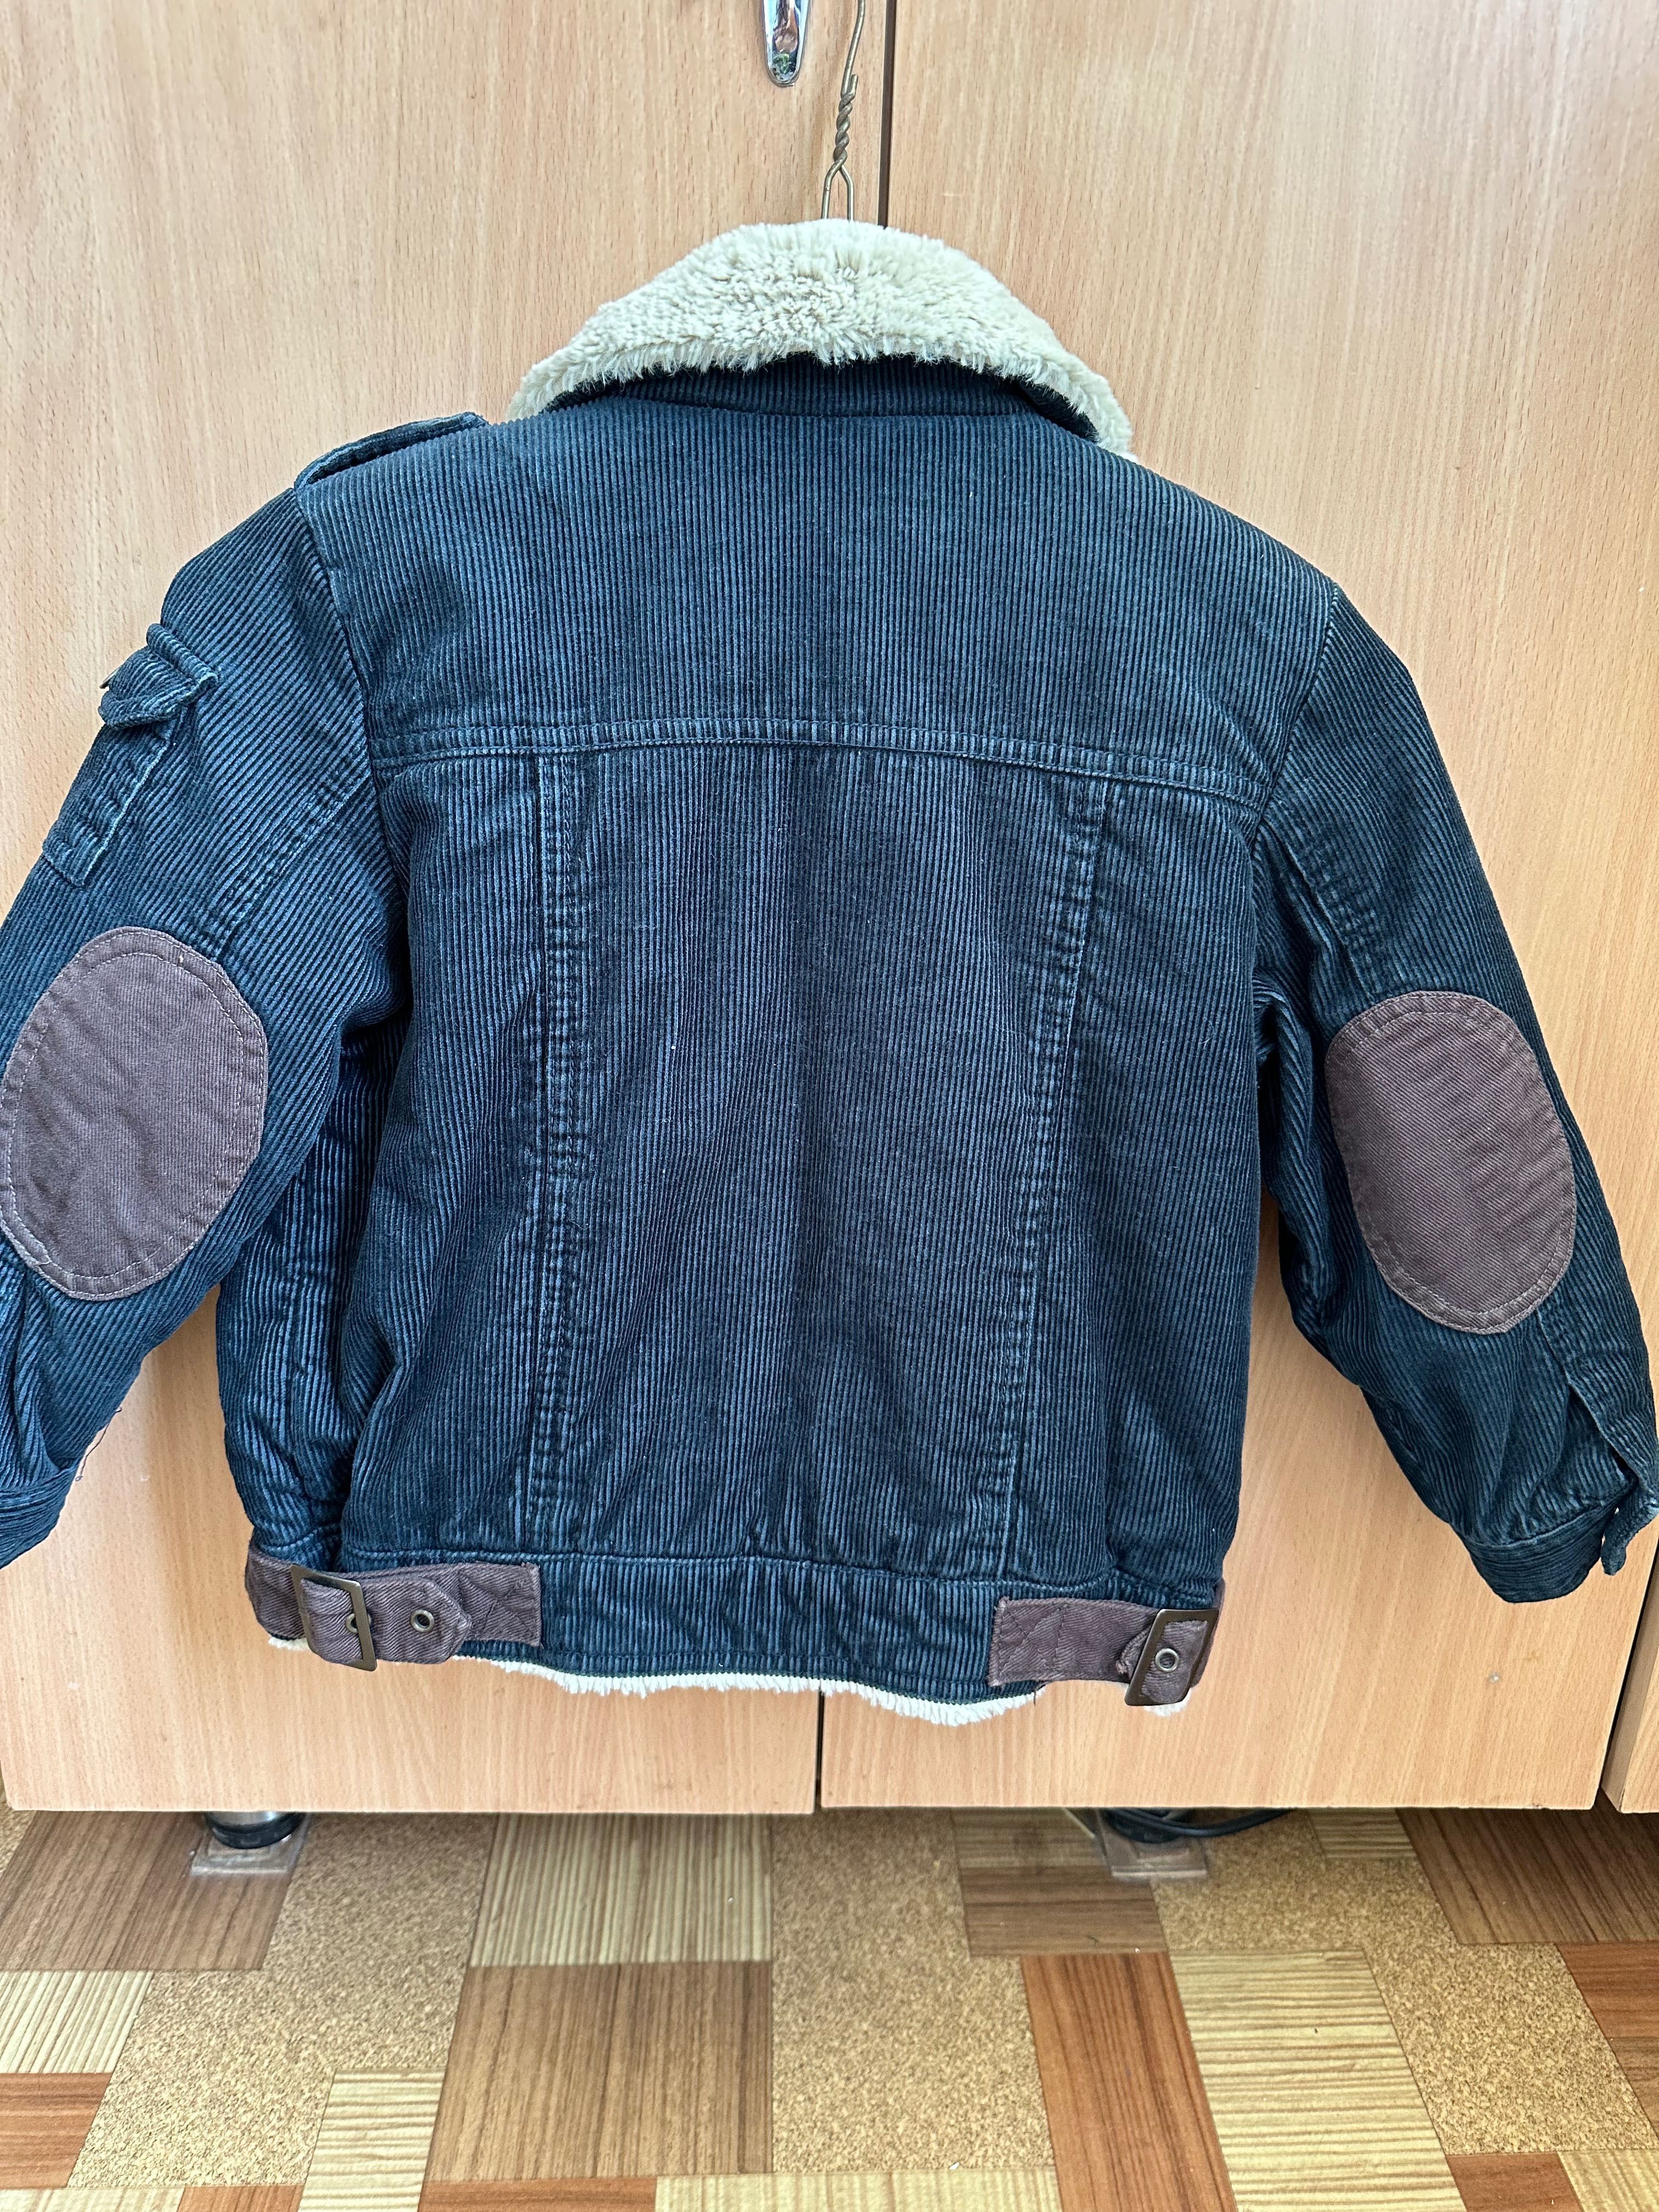 Курточка стеганная теплая на мальчика 4-5 лет